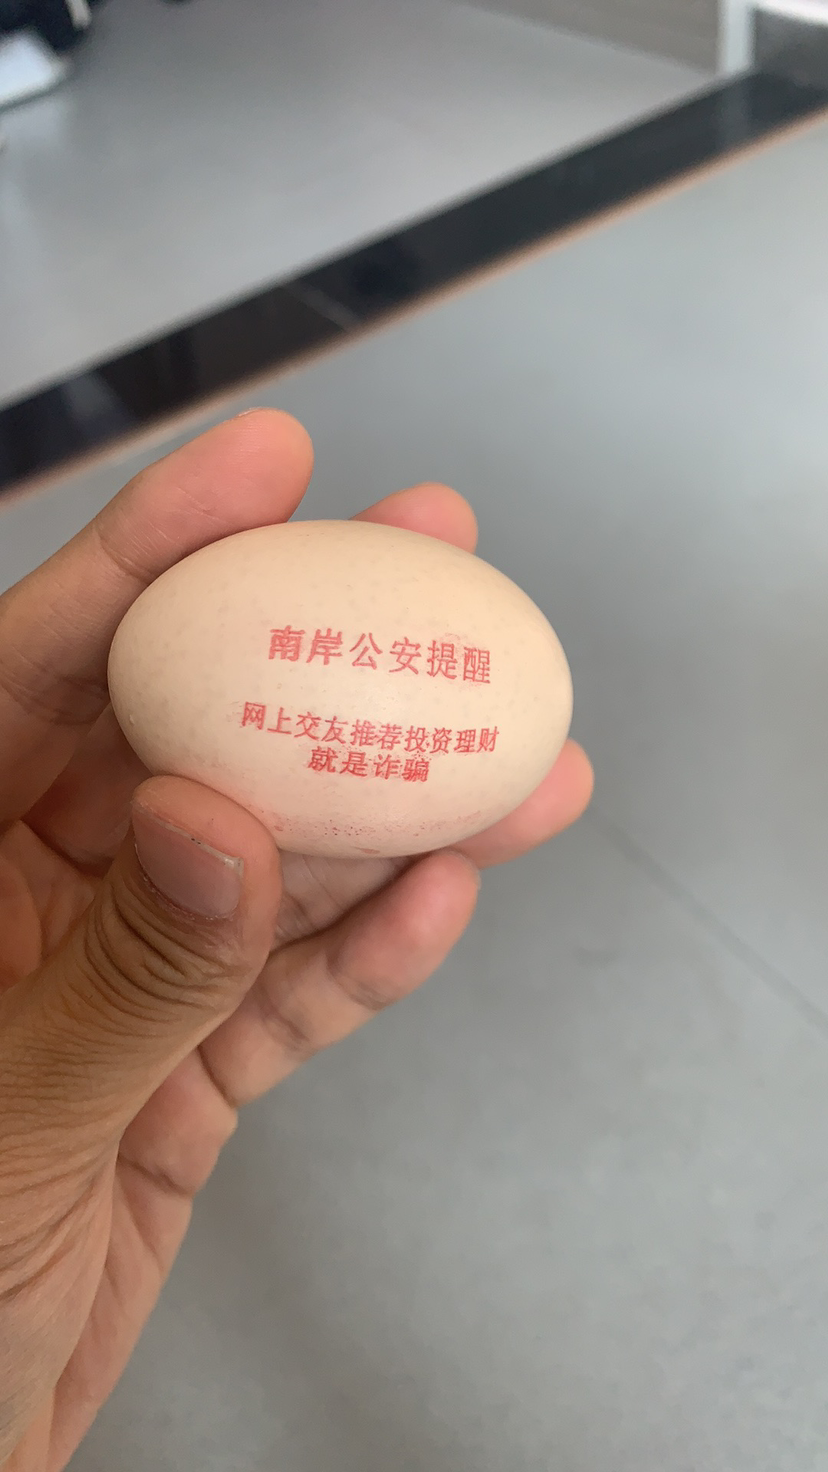 印有宣传标语的反诈鸡蛋 警方供图 华龙网-新重庆客户端发